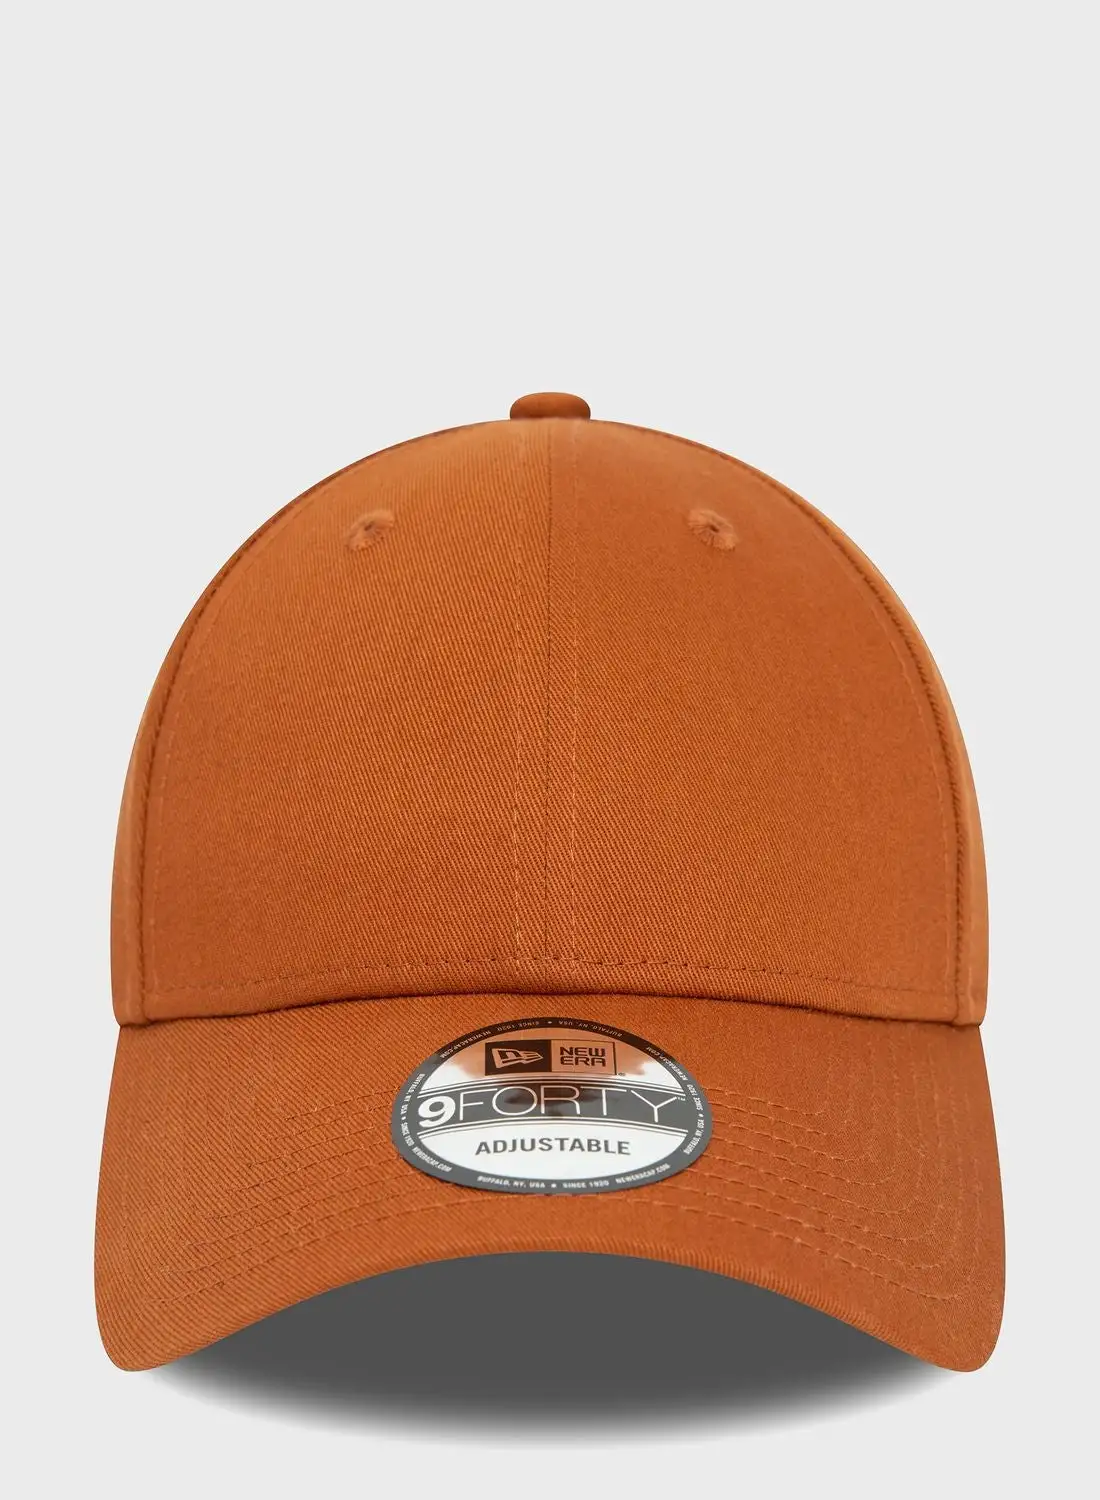 قبعة نيو إيرا كيدز إسنشال 9فورتي